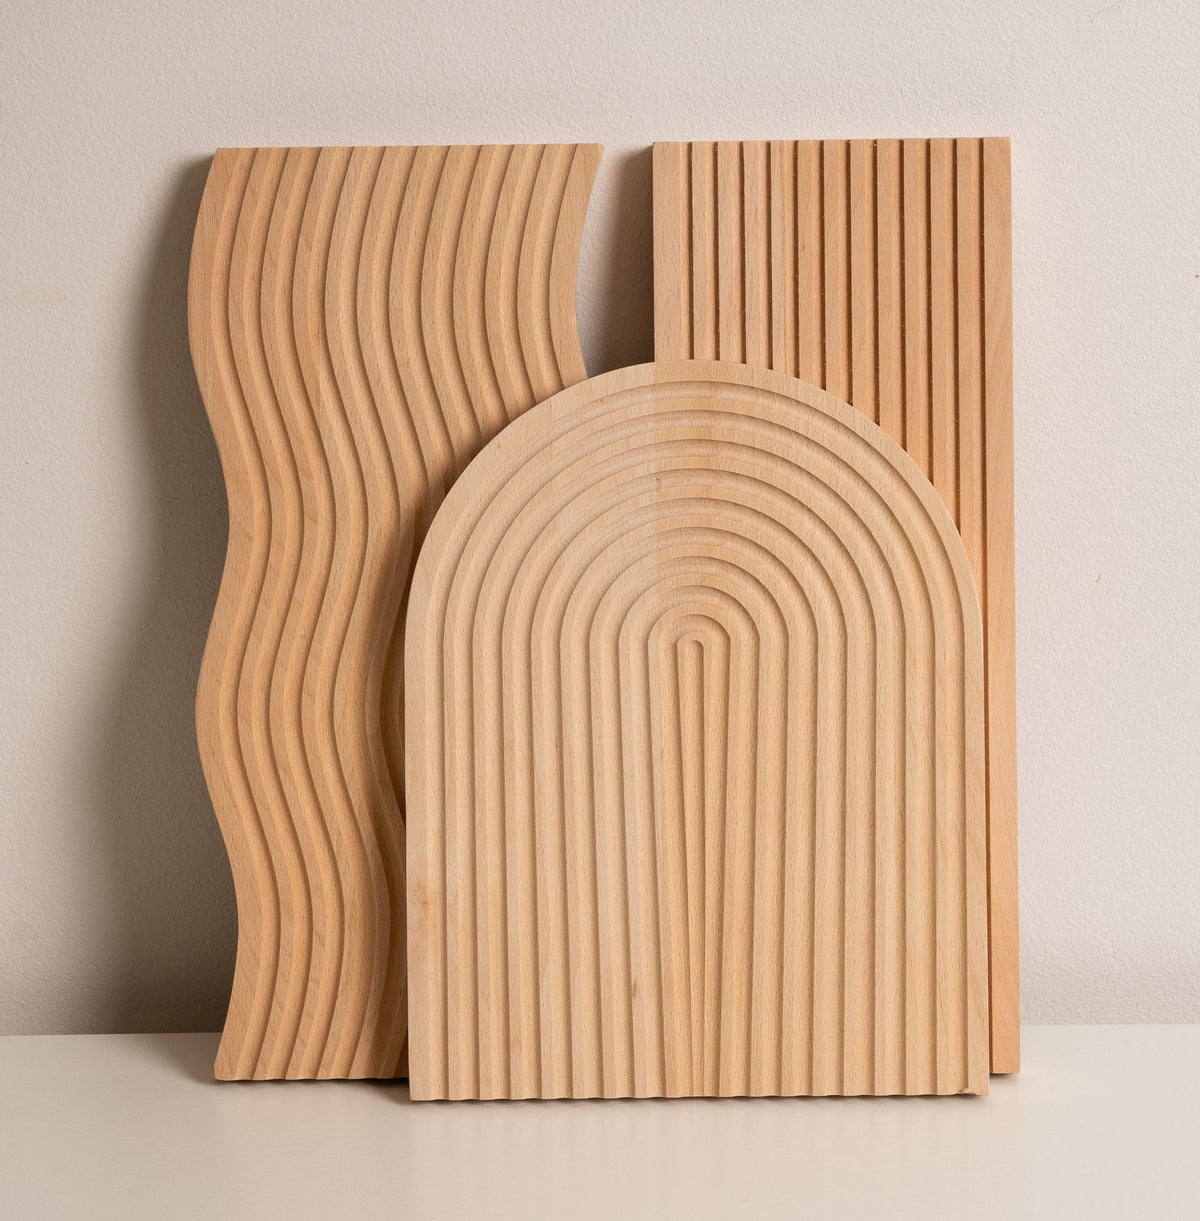 Lumi Board, Natural Wood Serving Tray